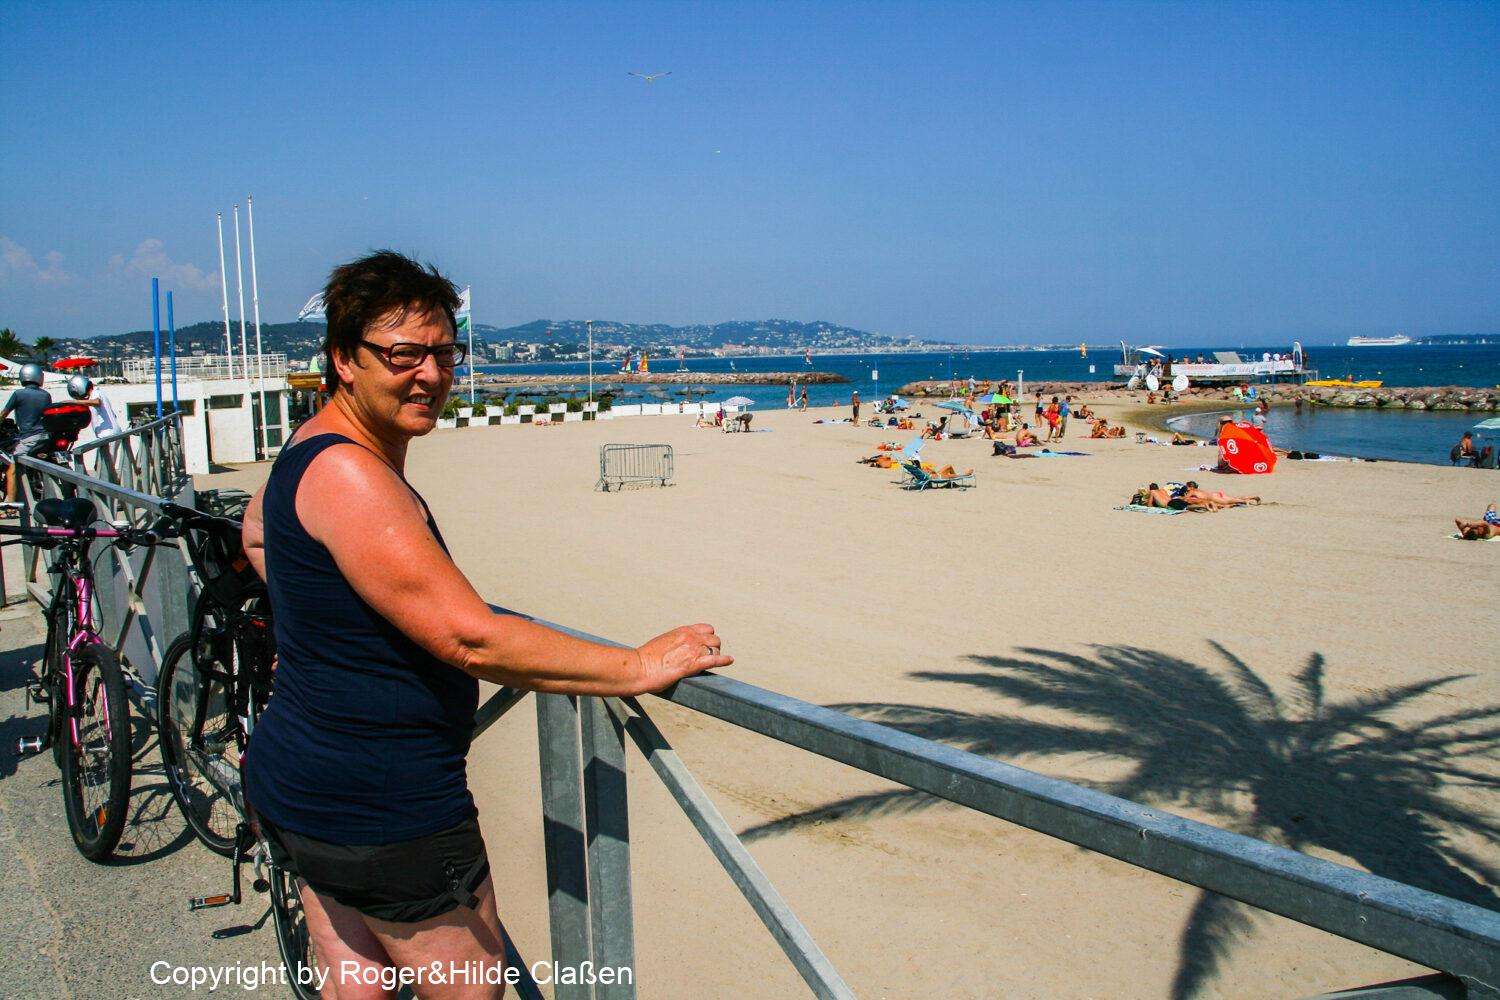 Hilde am Strand von Mandelieu-la-Napoule in der Nähe von Cannes